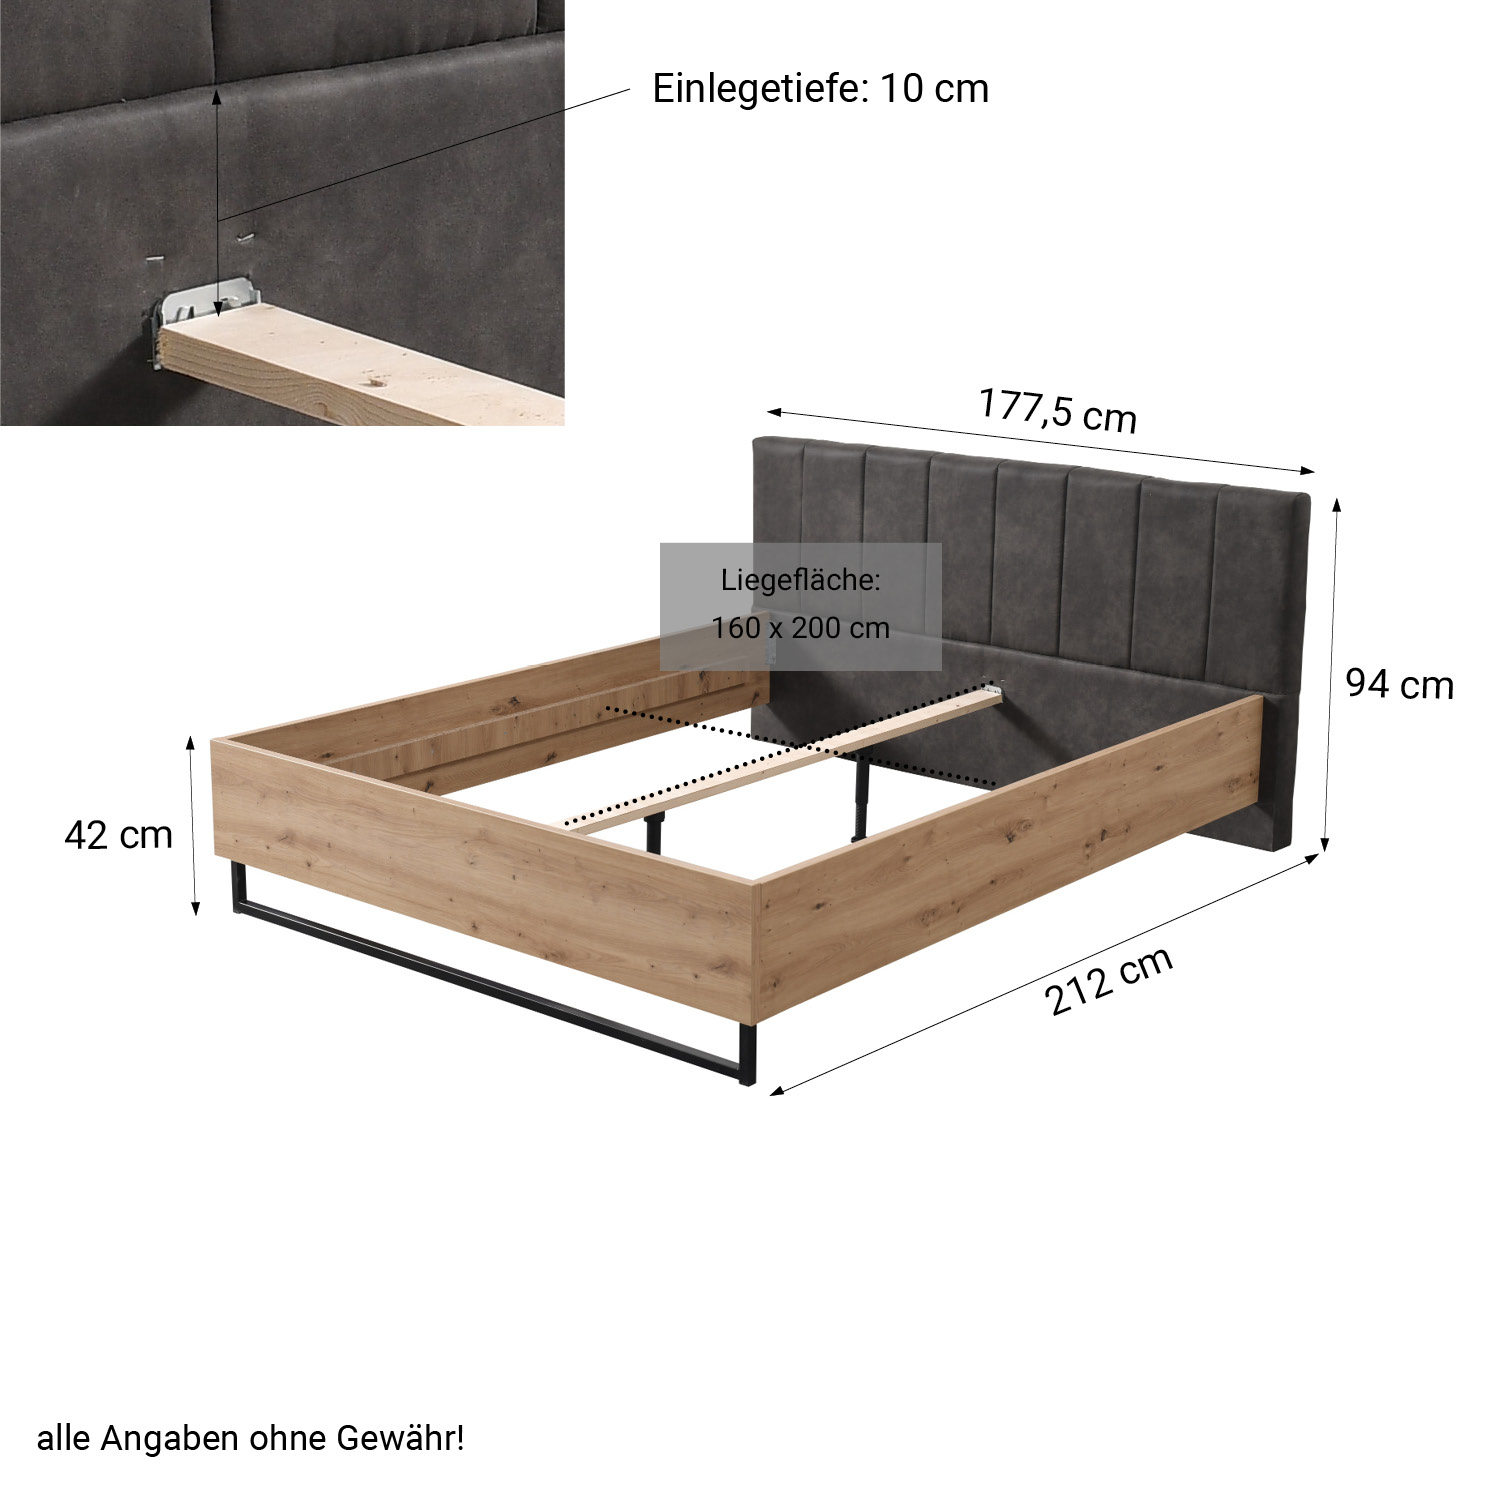 Doppelbett Holzbett Polsterbett 160 180 cm Bett Lattenrost Eiche Stoff Grau Industrial Style